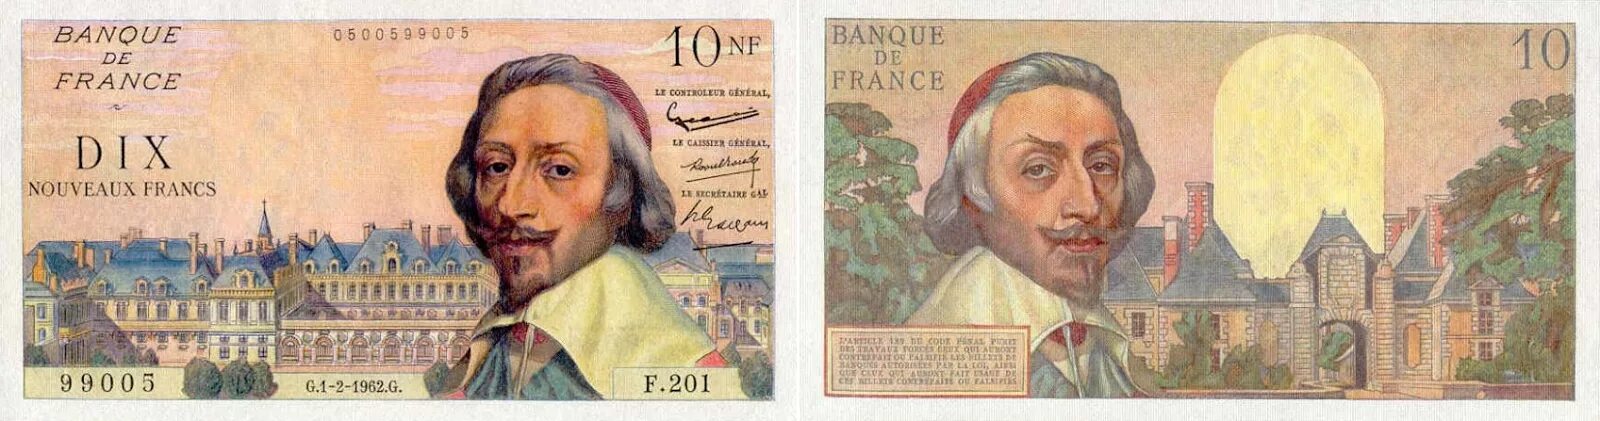 Купюры Mille Francs 1000. 1000 Mille Francs one Thousand Francs. Пробные банкноты Франции. Французские деньги фото.